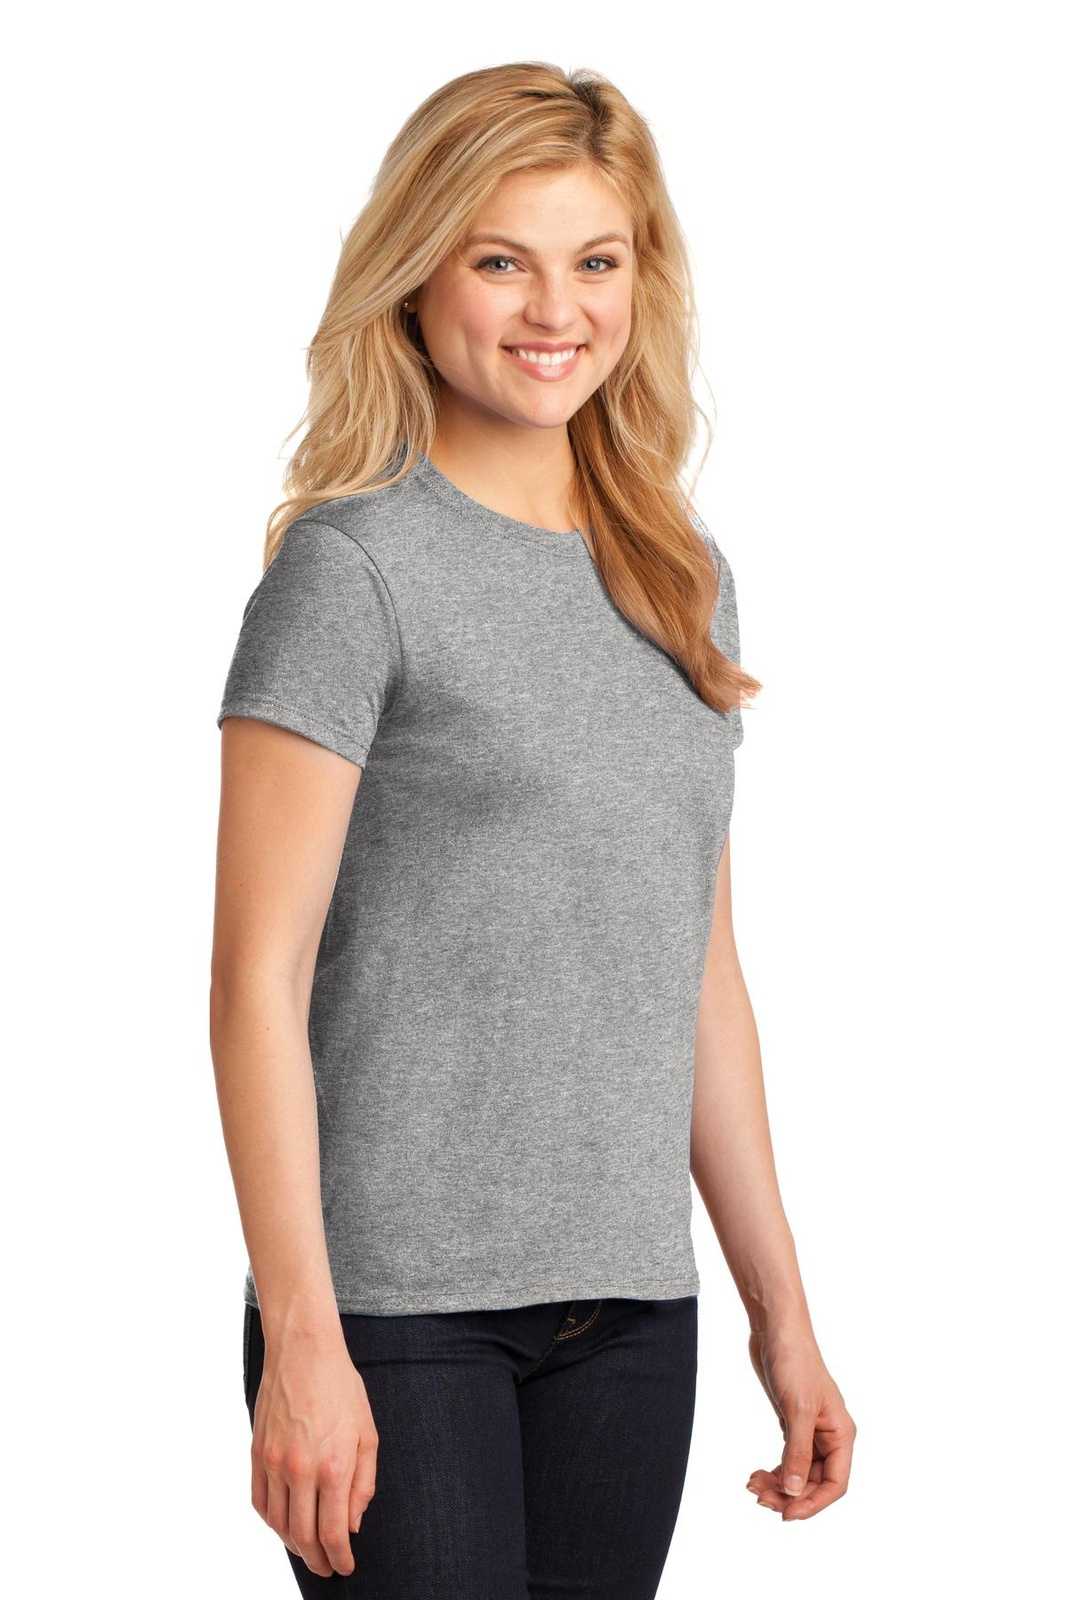 Gildan 5000L Ladies Heavy Cotton 100% Cotton T-Shirt - Sport Gray - HIT a Double